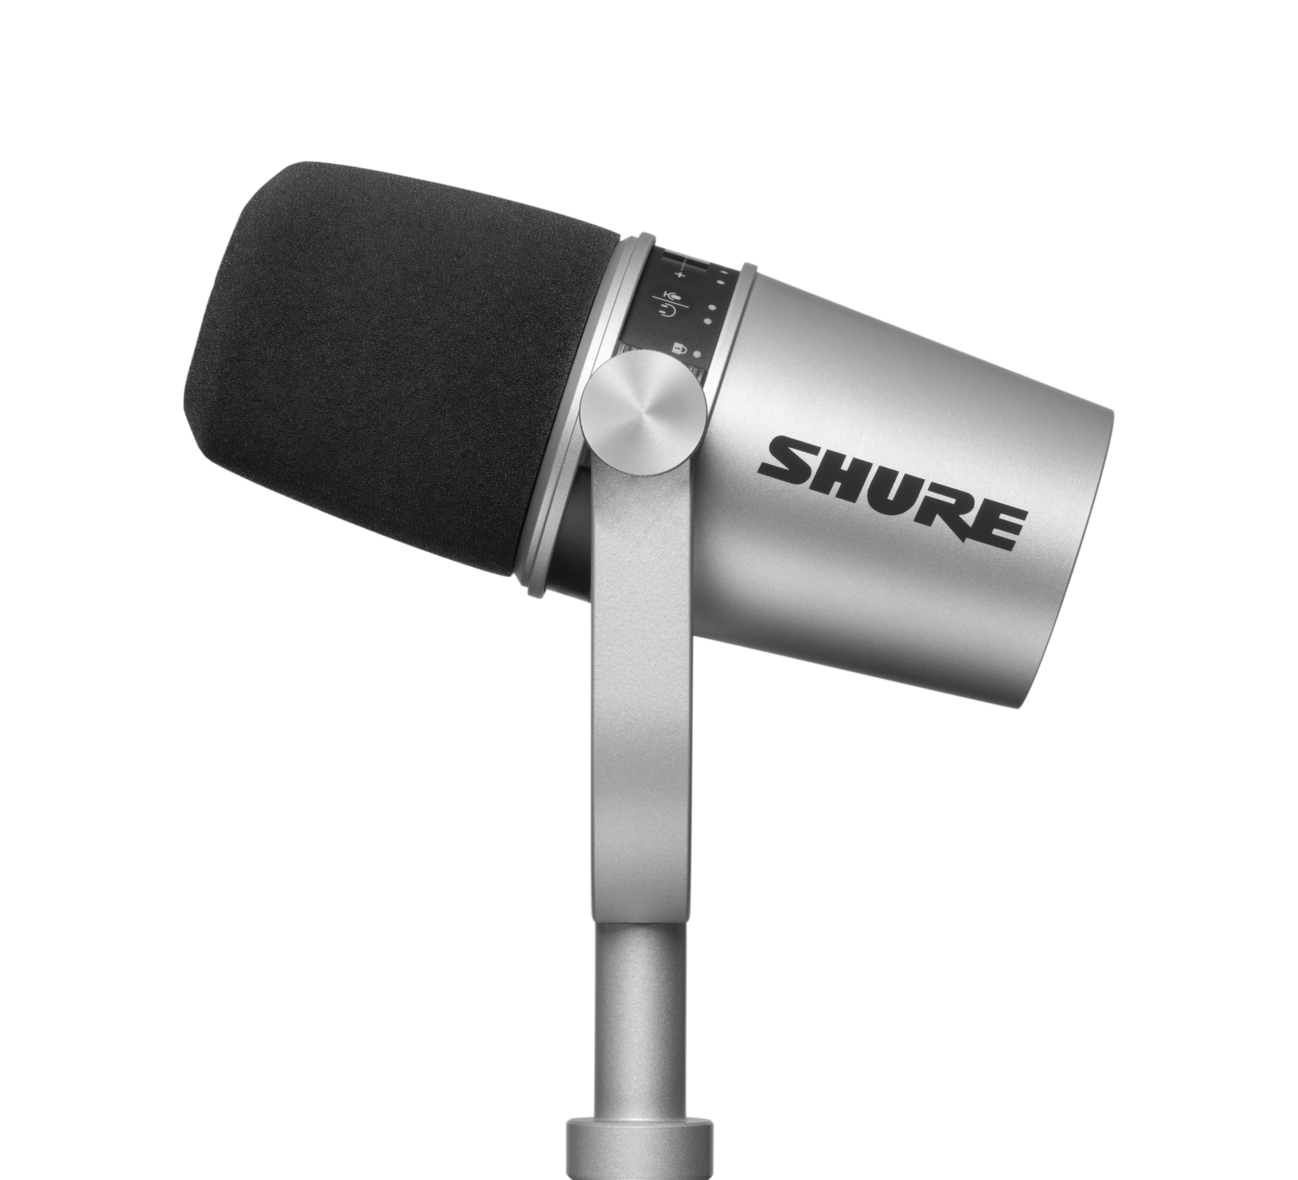 Shure - Micrófono Condensador USB, Color: Plata Mod.MV7-S_24